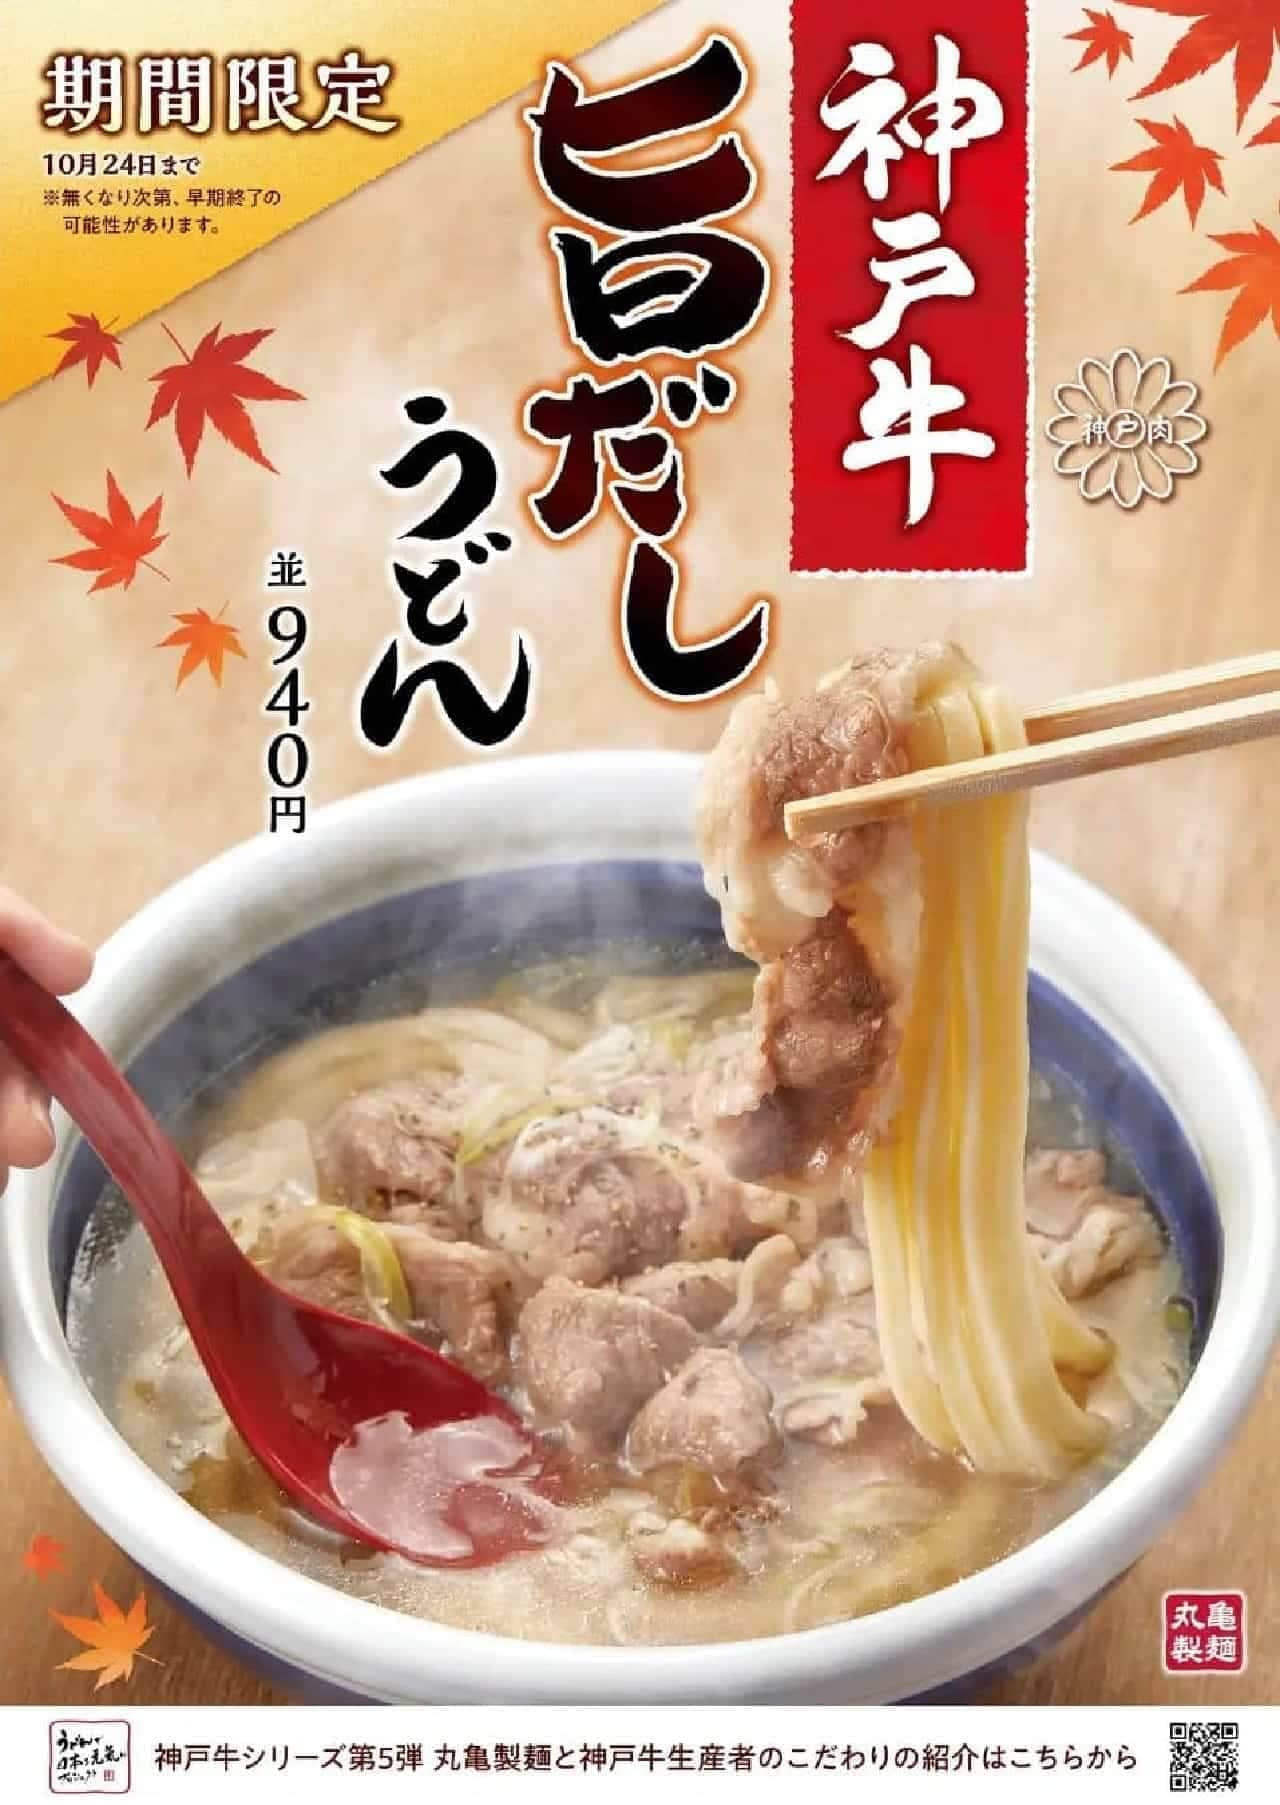 丸亀製麺「神戸牛 旨だしうどん」